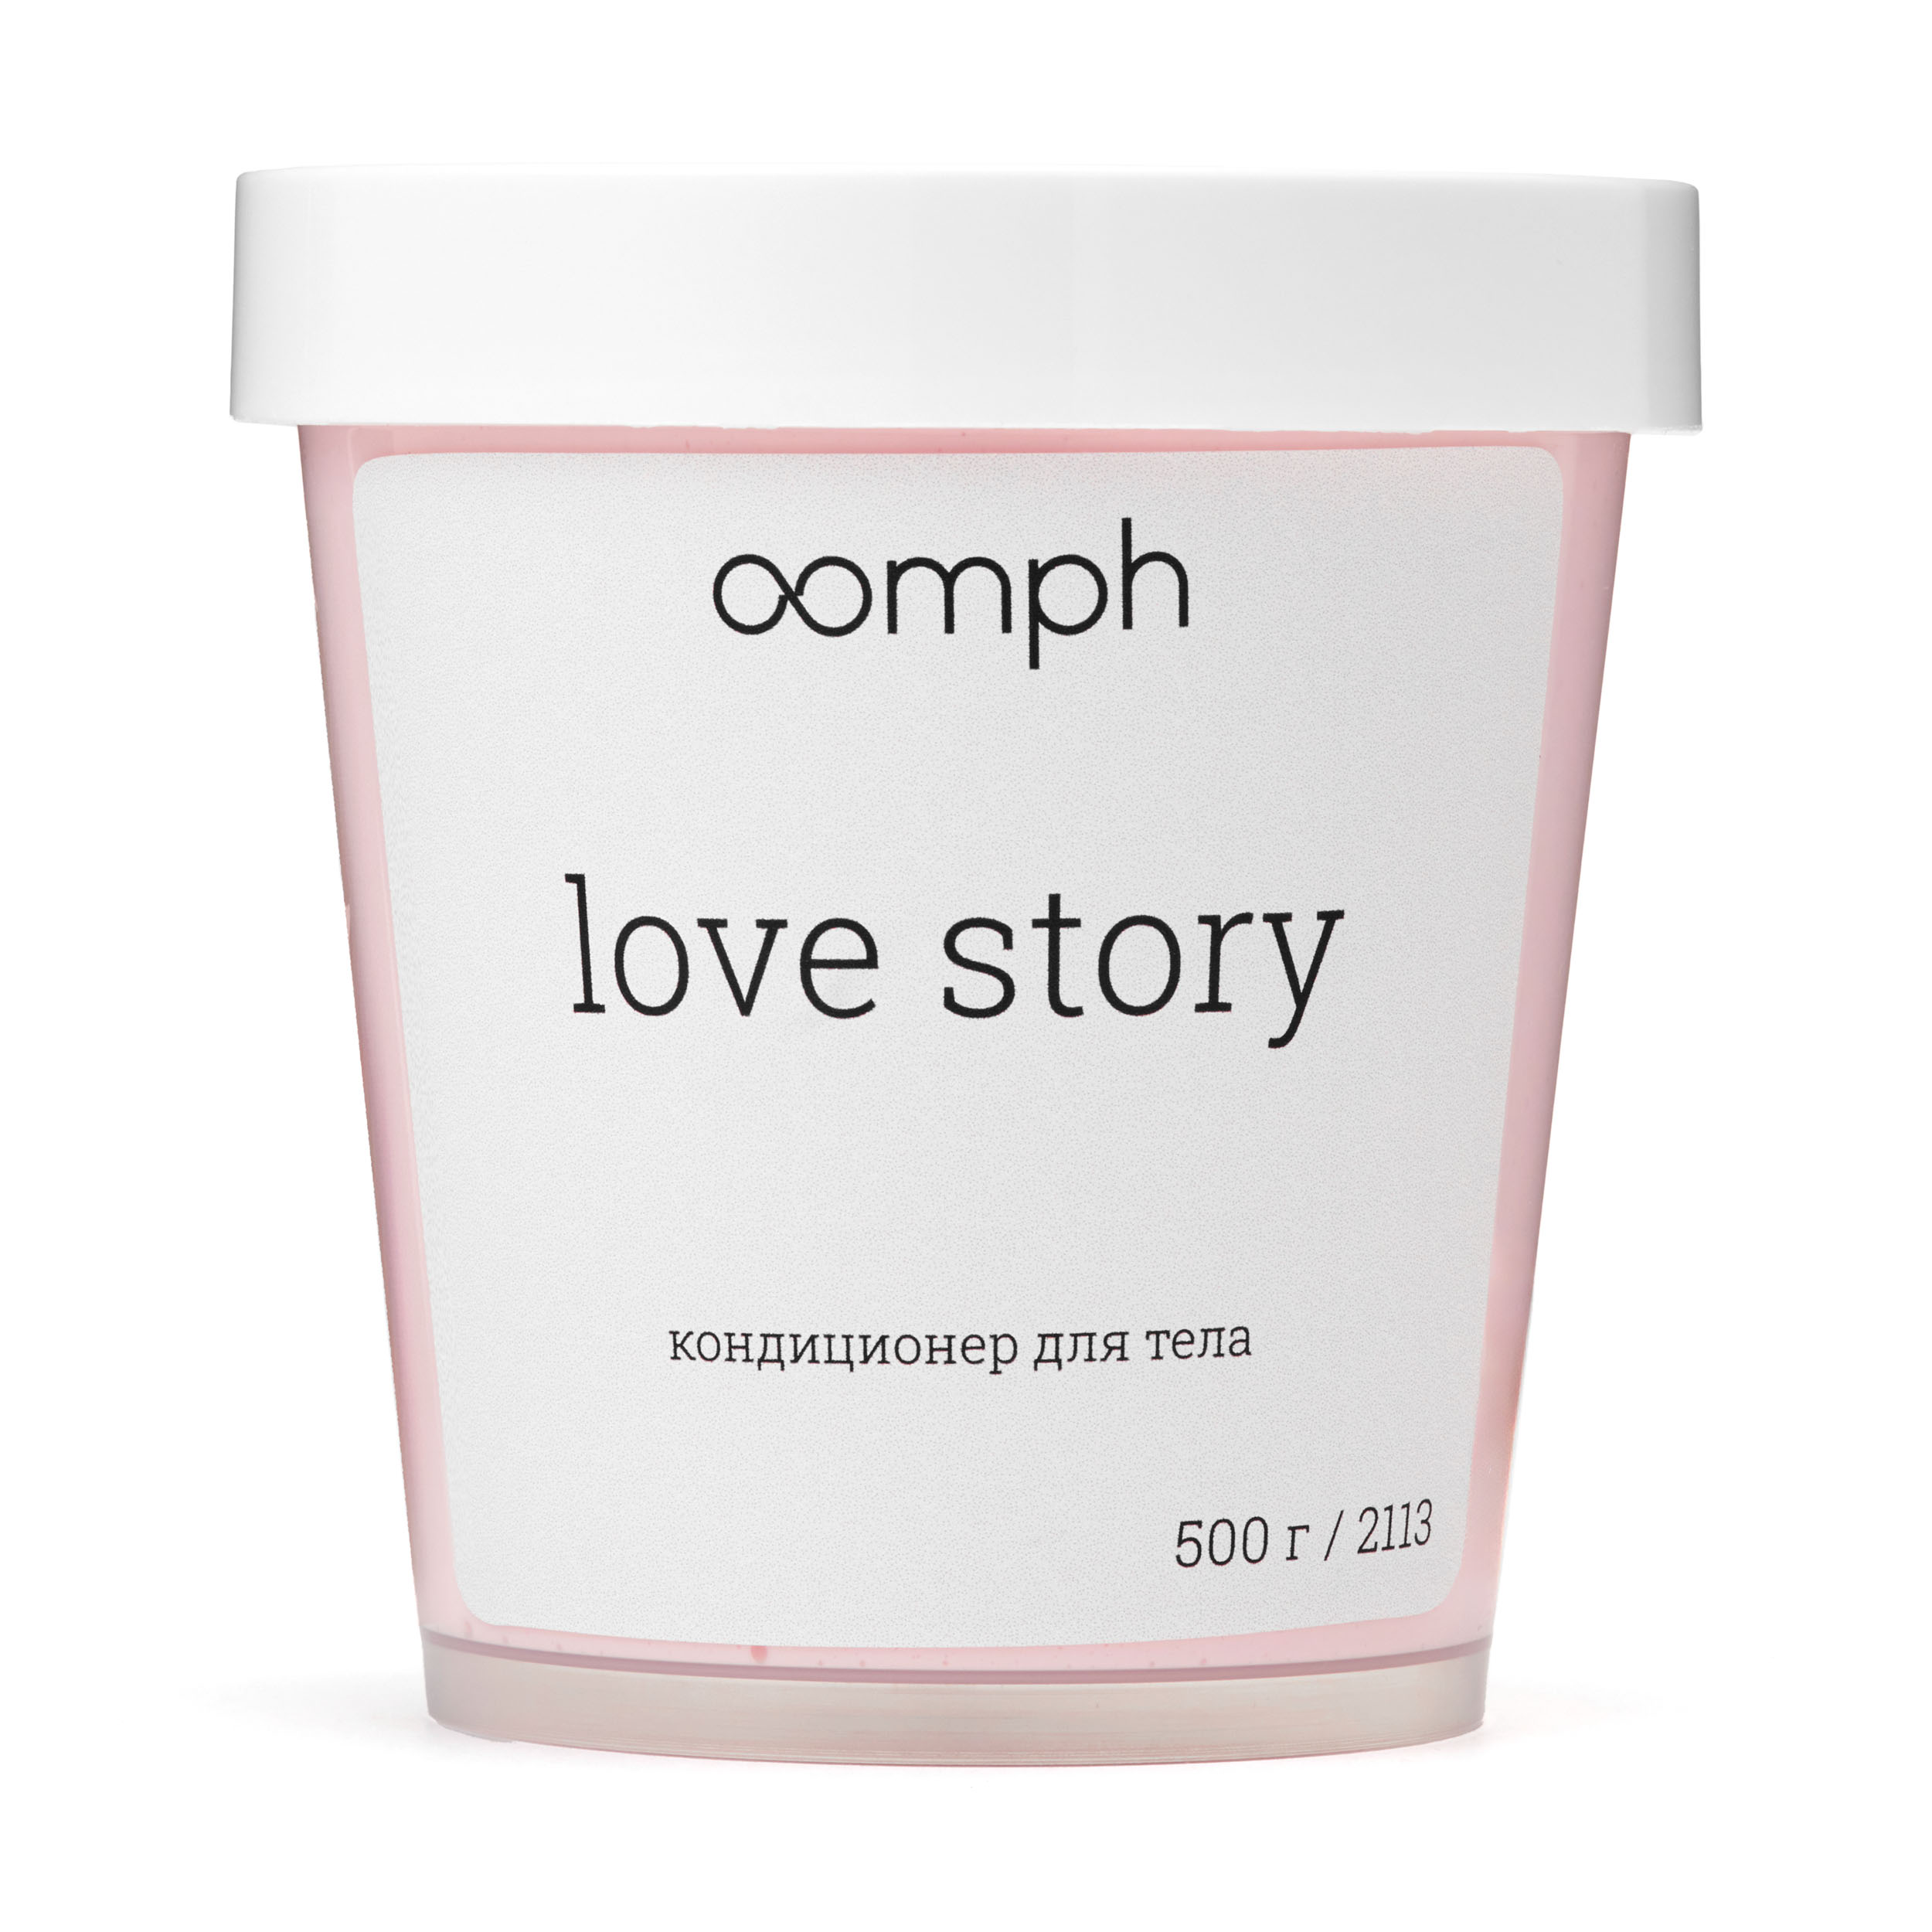 Кондиционер для тела OOMPH Love story 500г неверный ромео качан в